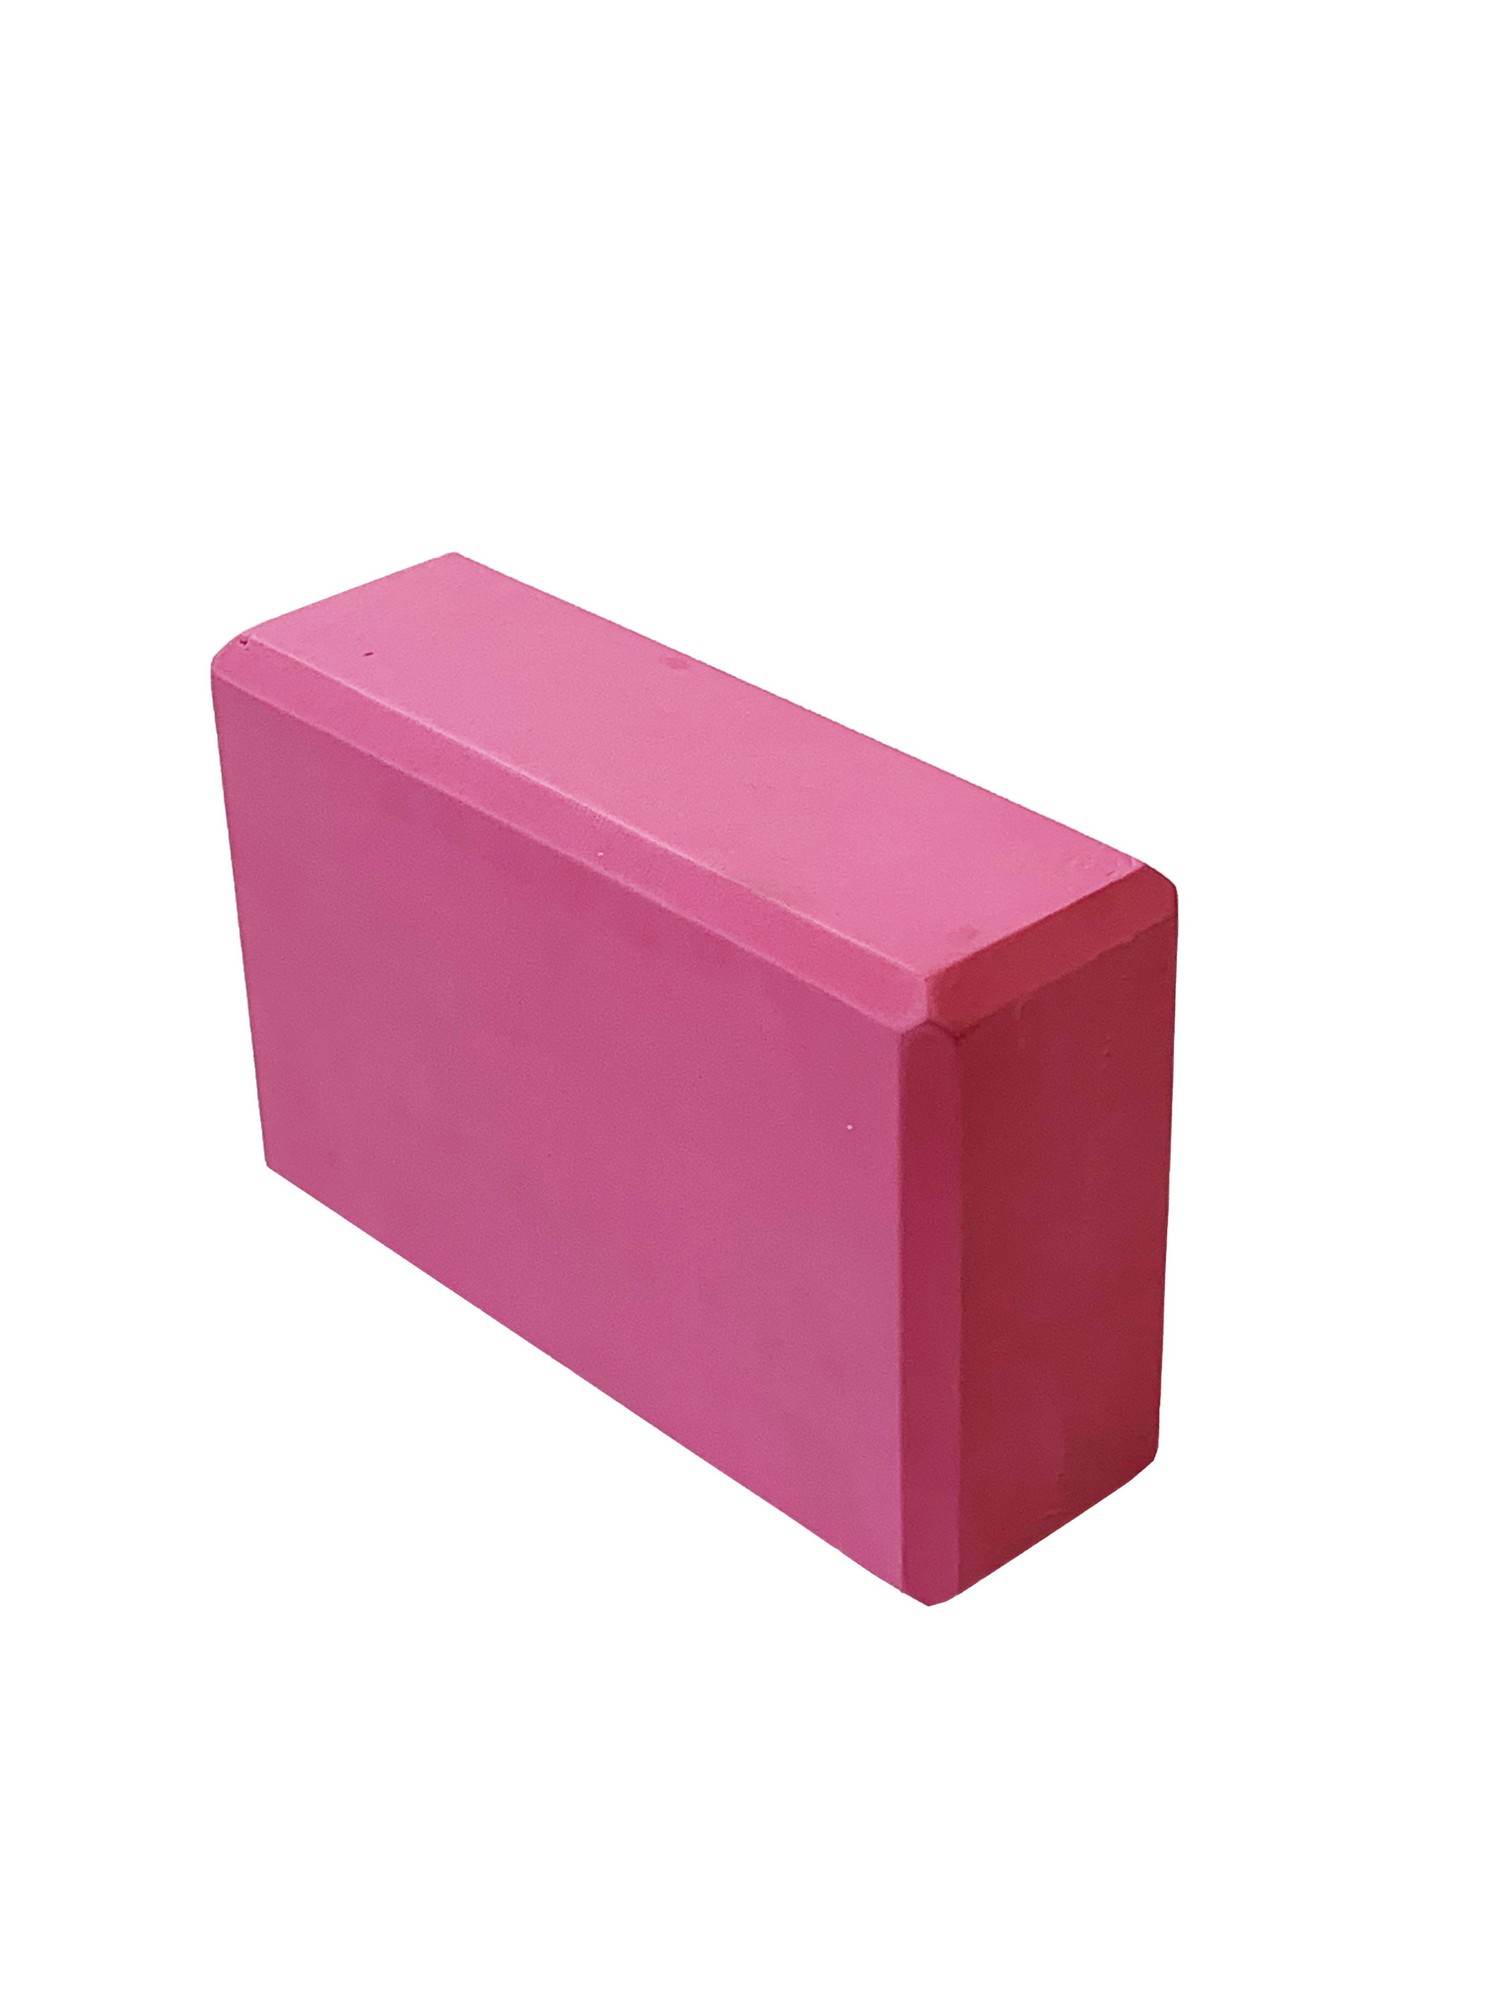 Йога блок Sportex полумягкий, из вспененного ЭВА 22,3х15х7,6 см E39131-57 розовый